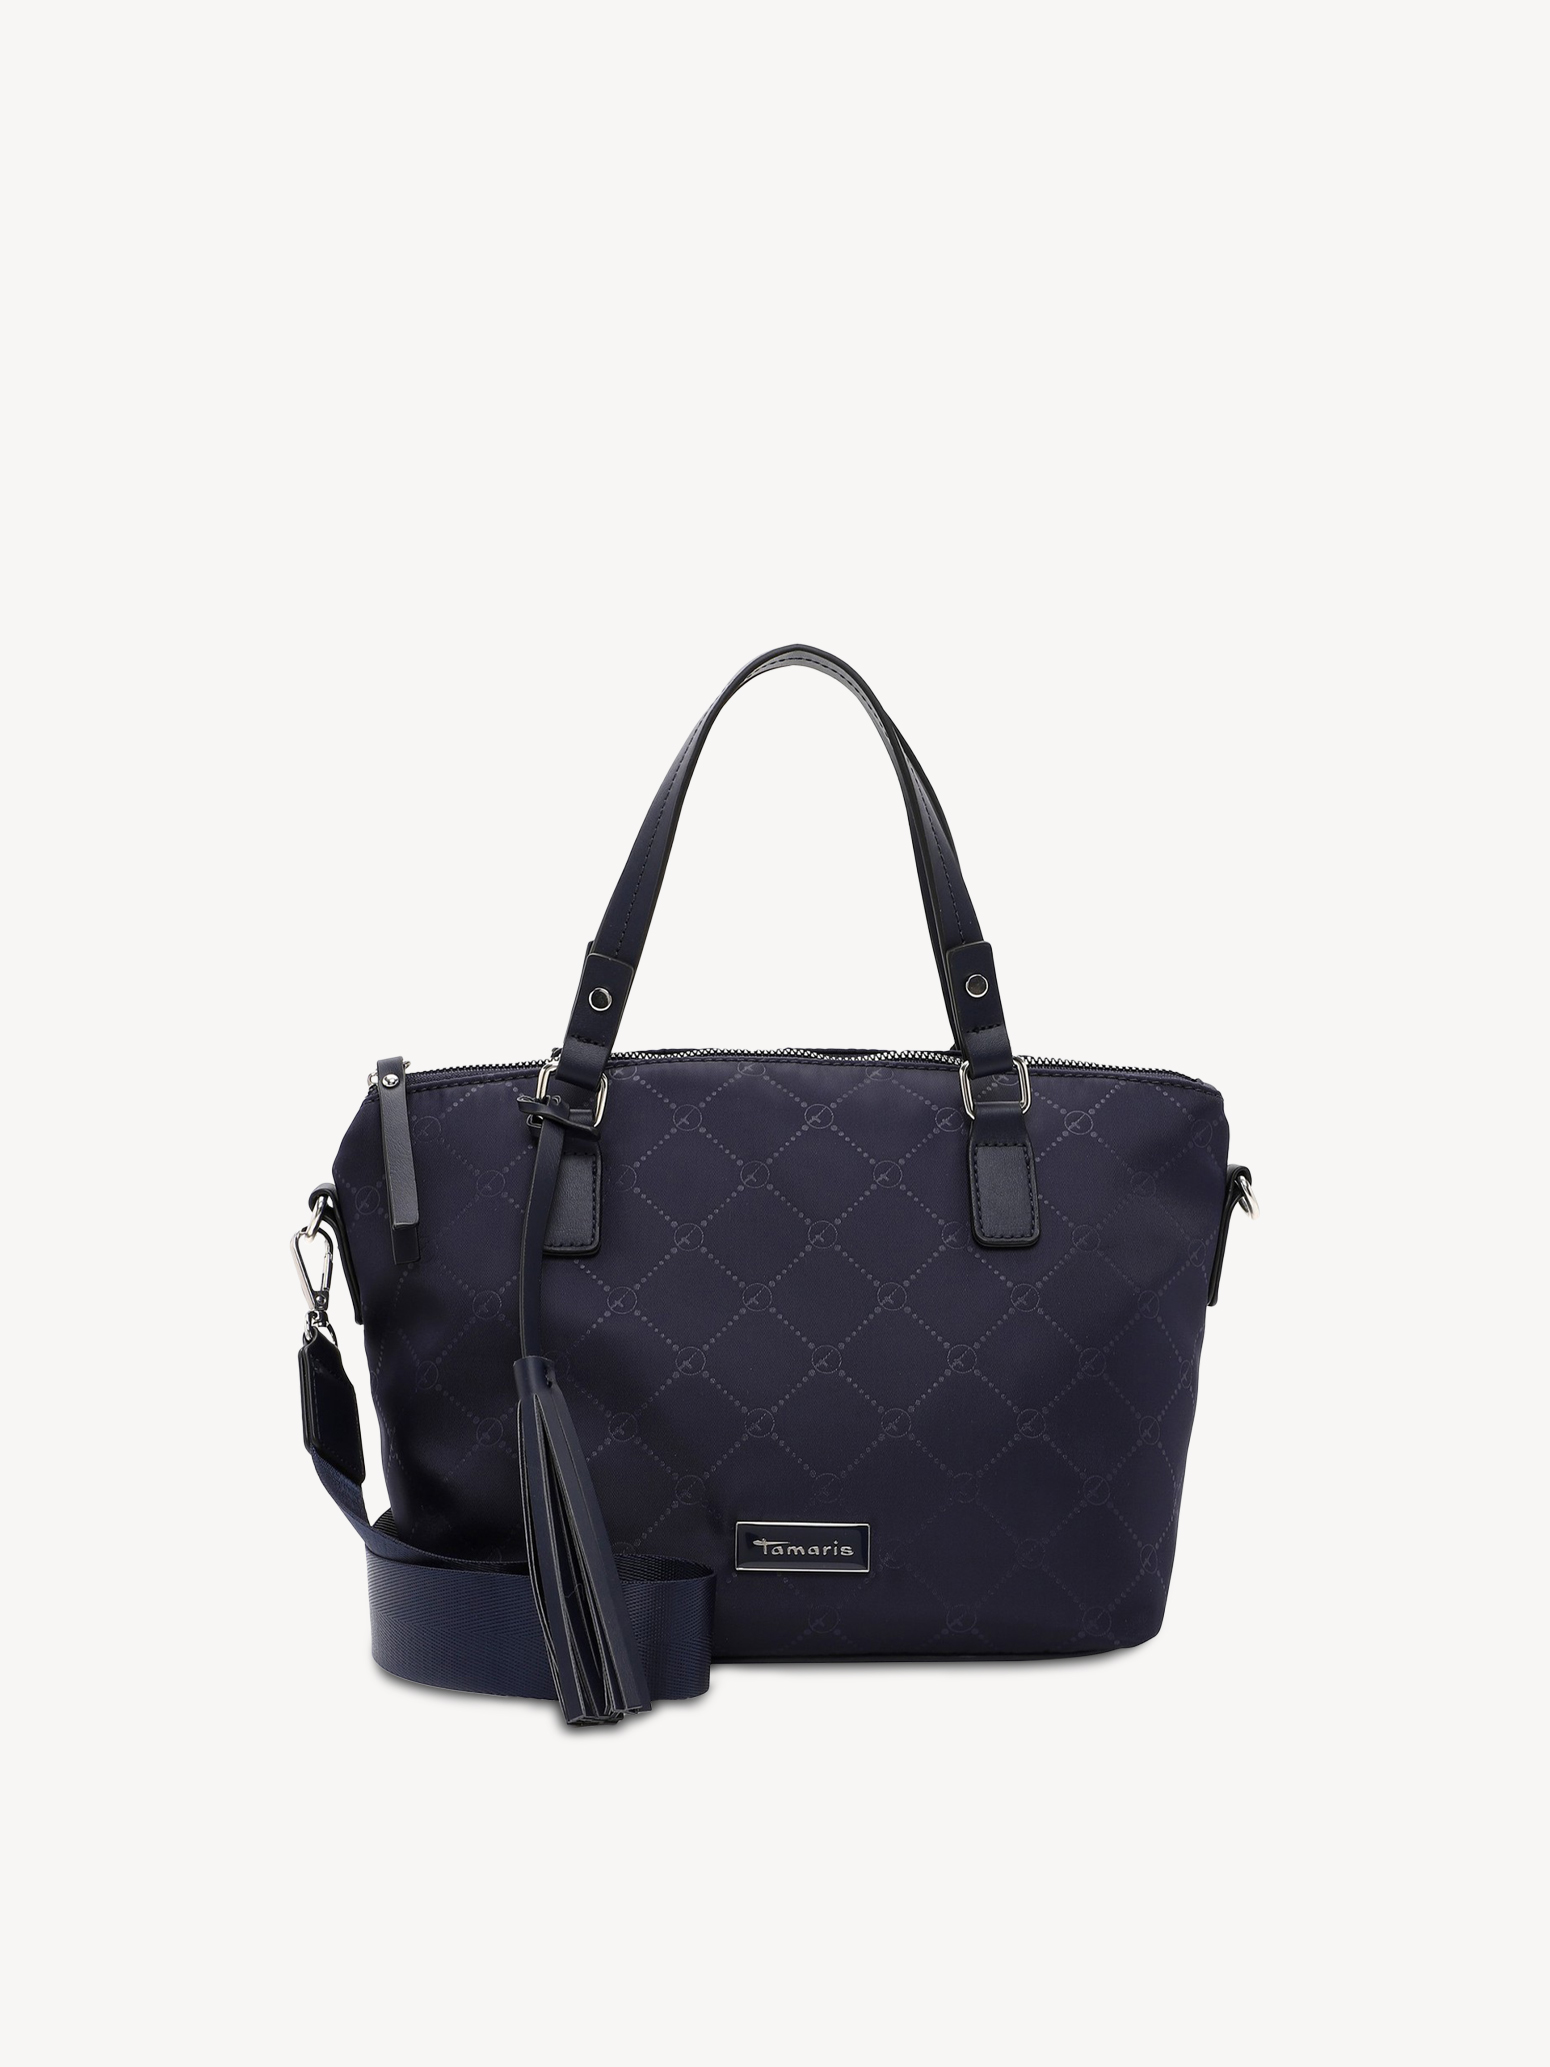 Shopping bag - blue 32387-500: Buy Tamaris Shopping bags online!